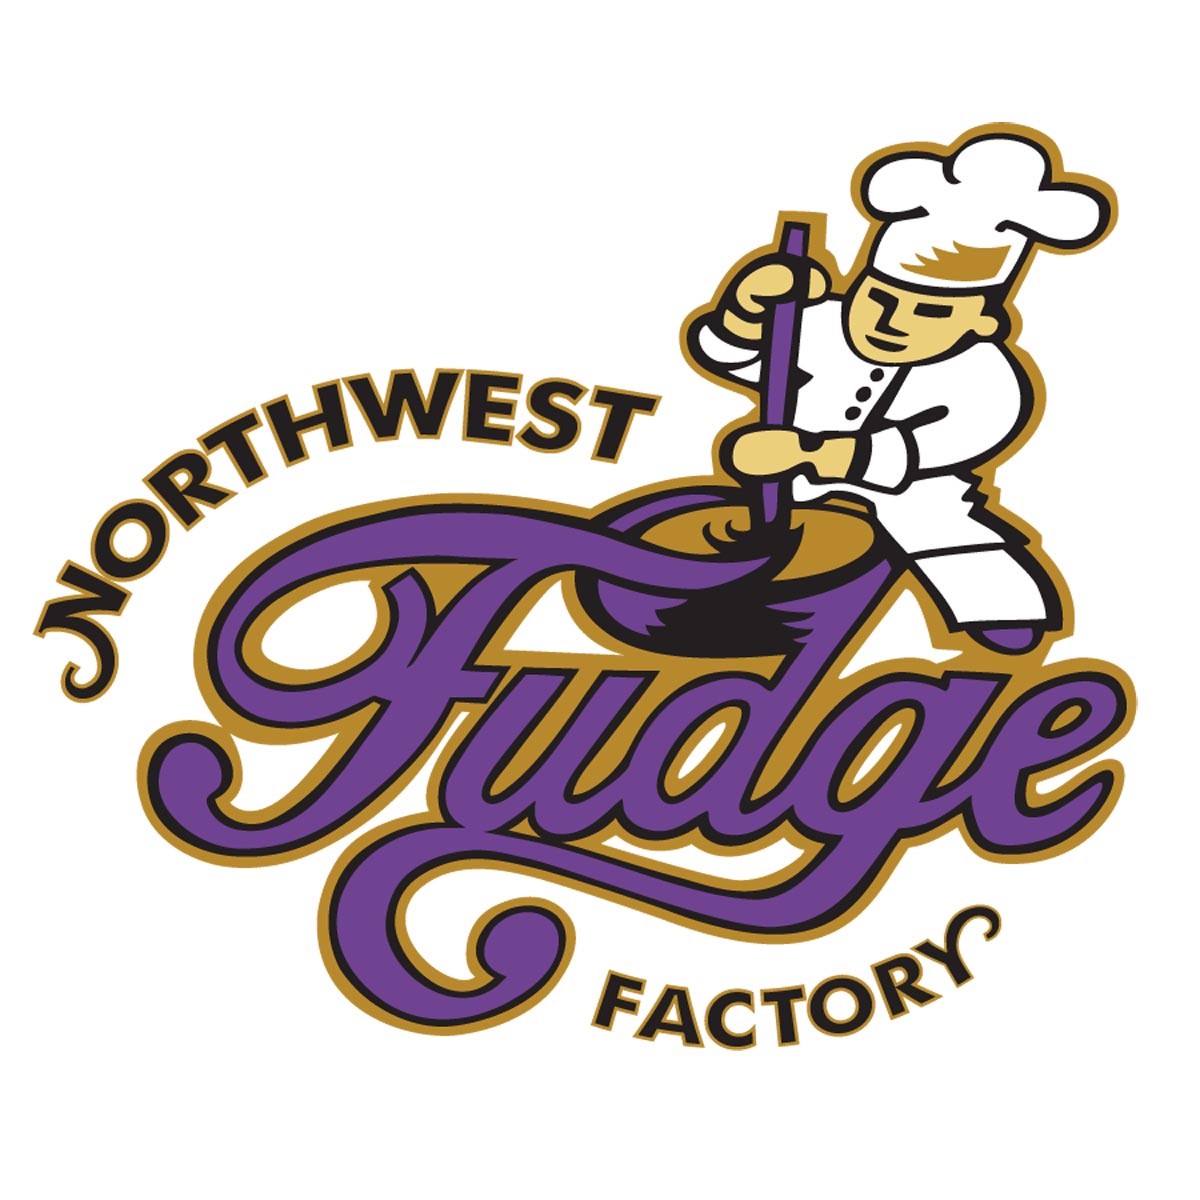 Northwest Fudge Factory